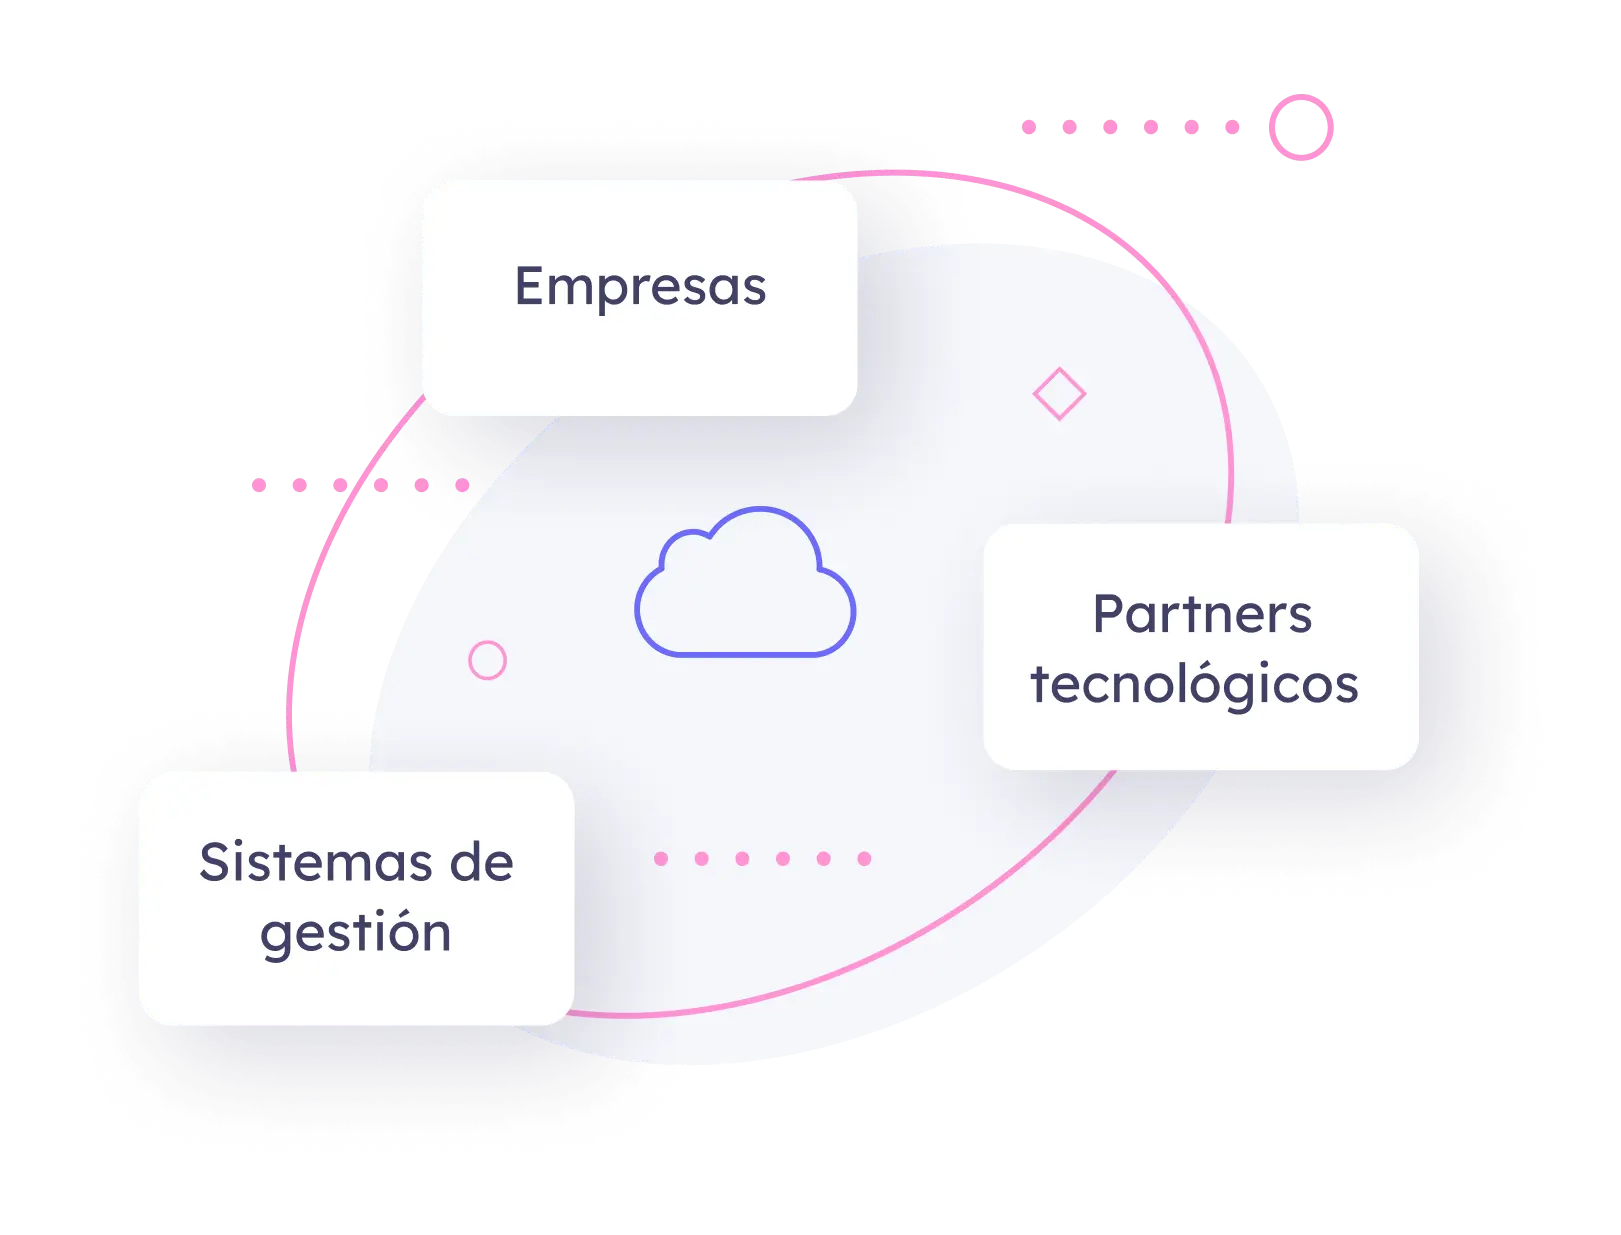 Diagrama empresas, partners tecnológicos y sistemas de gestión conectados formando una red